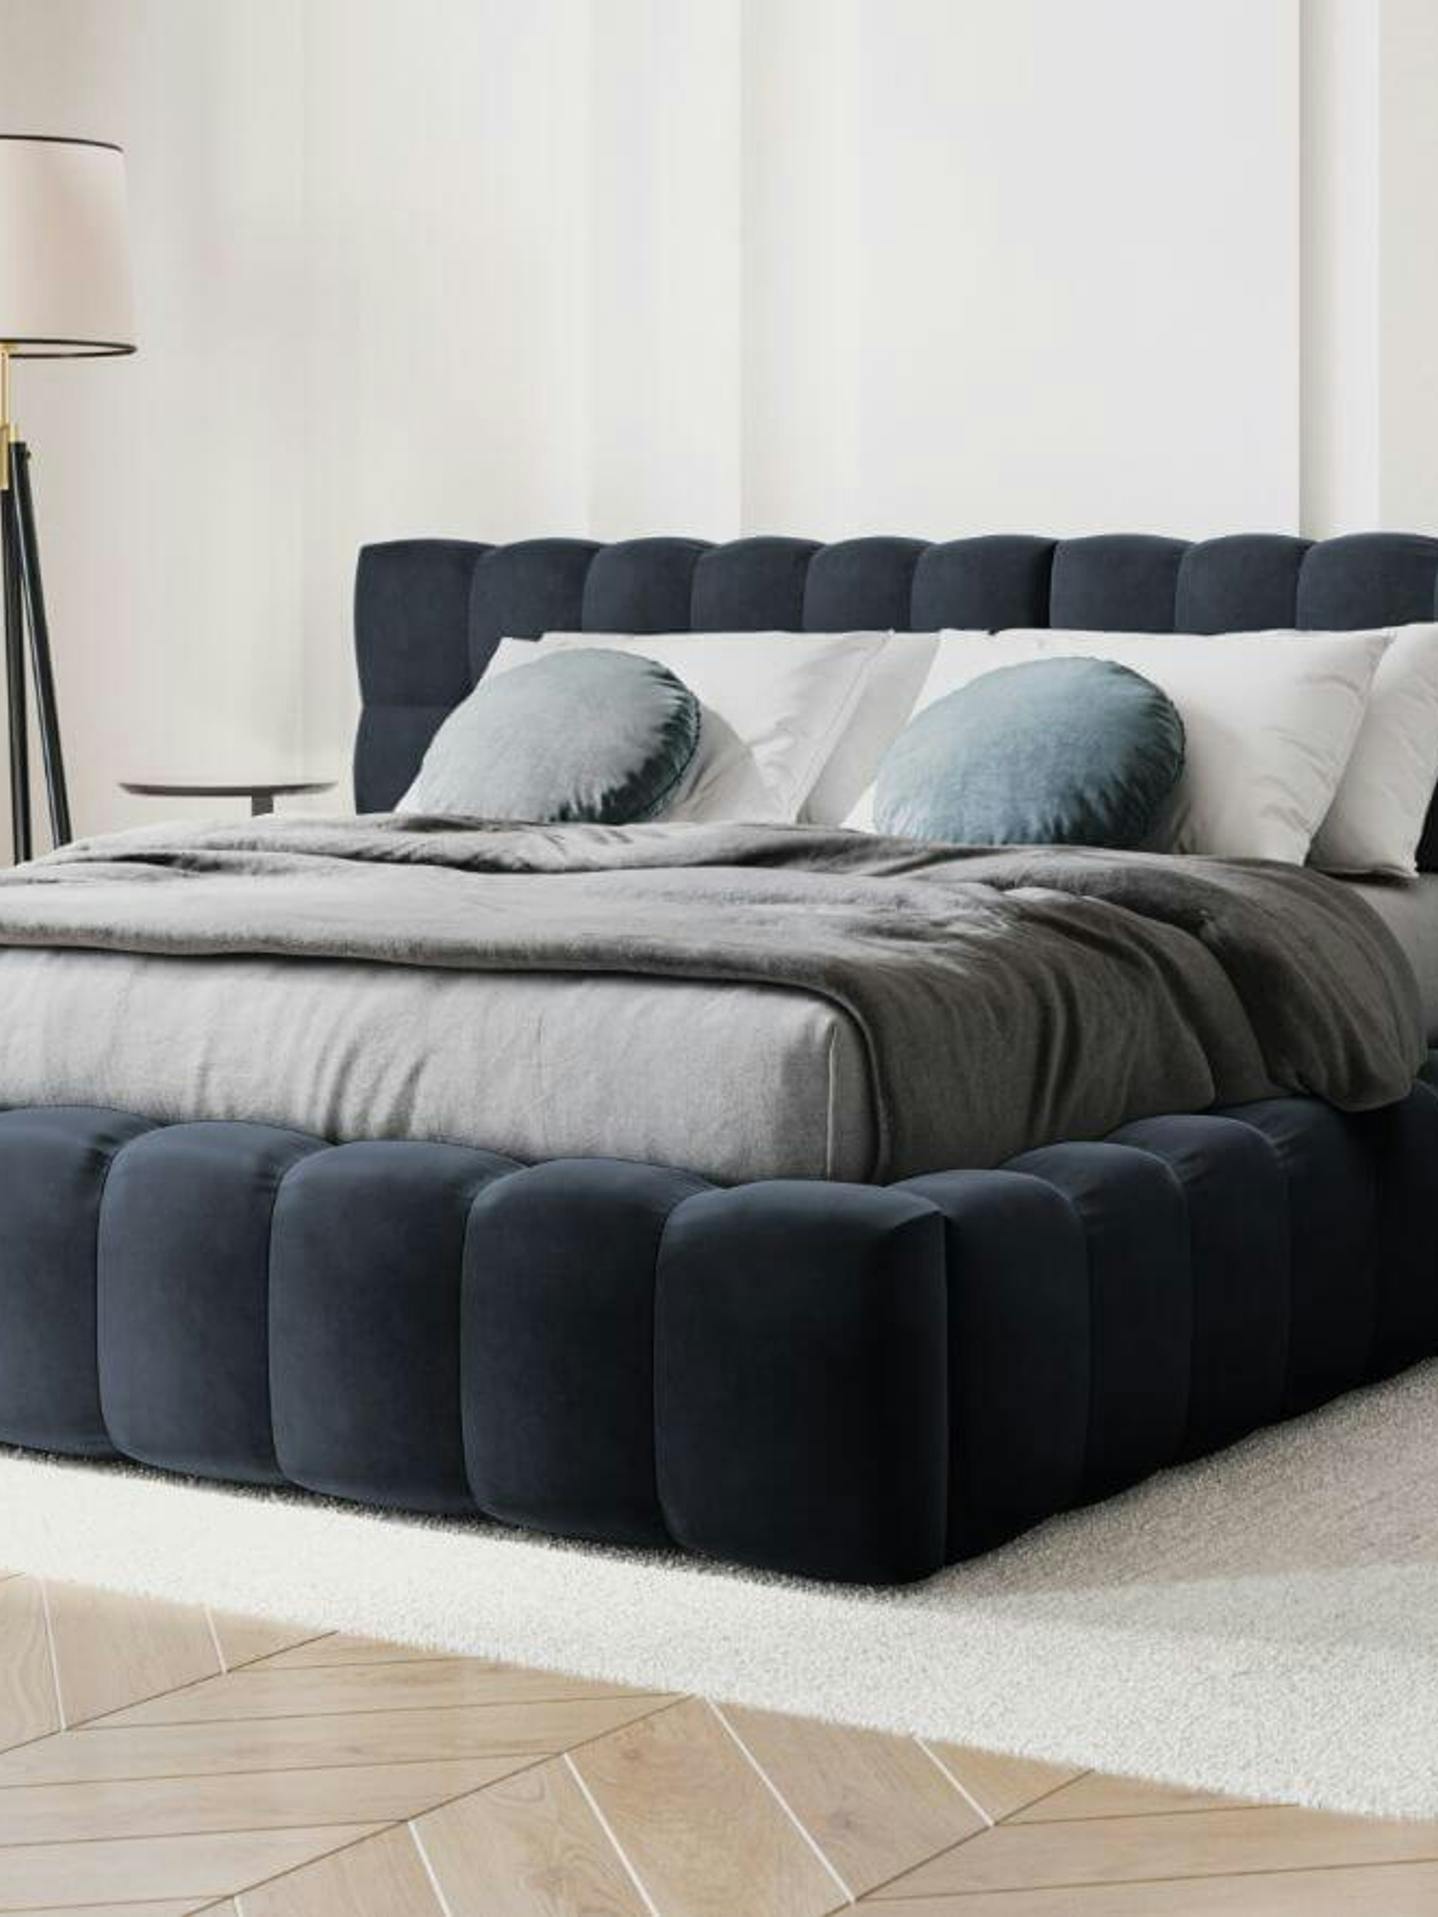 Duże wygodne łóżko tapicerowane ma ogromne znaczenie dla zdrowego snu